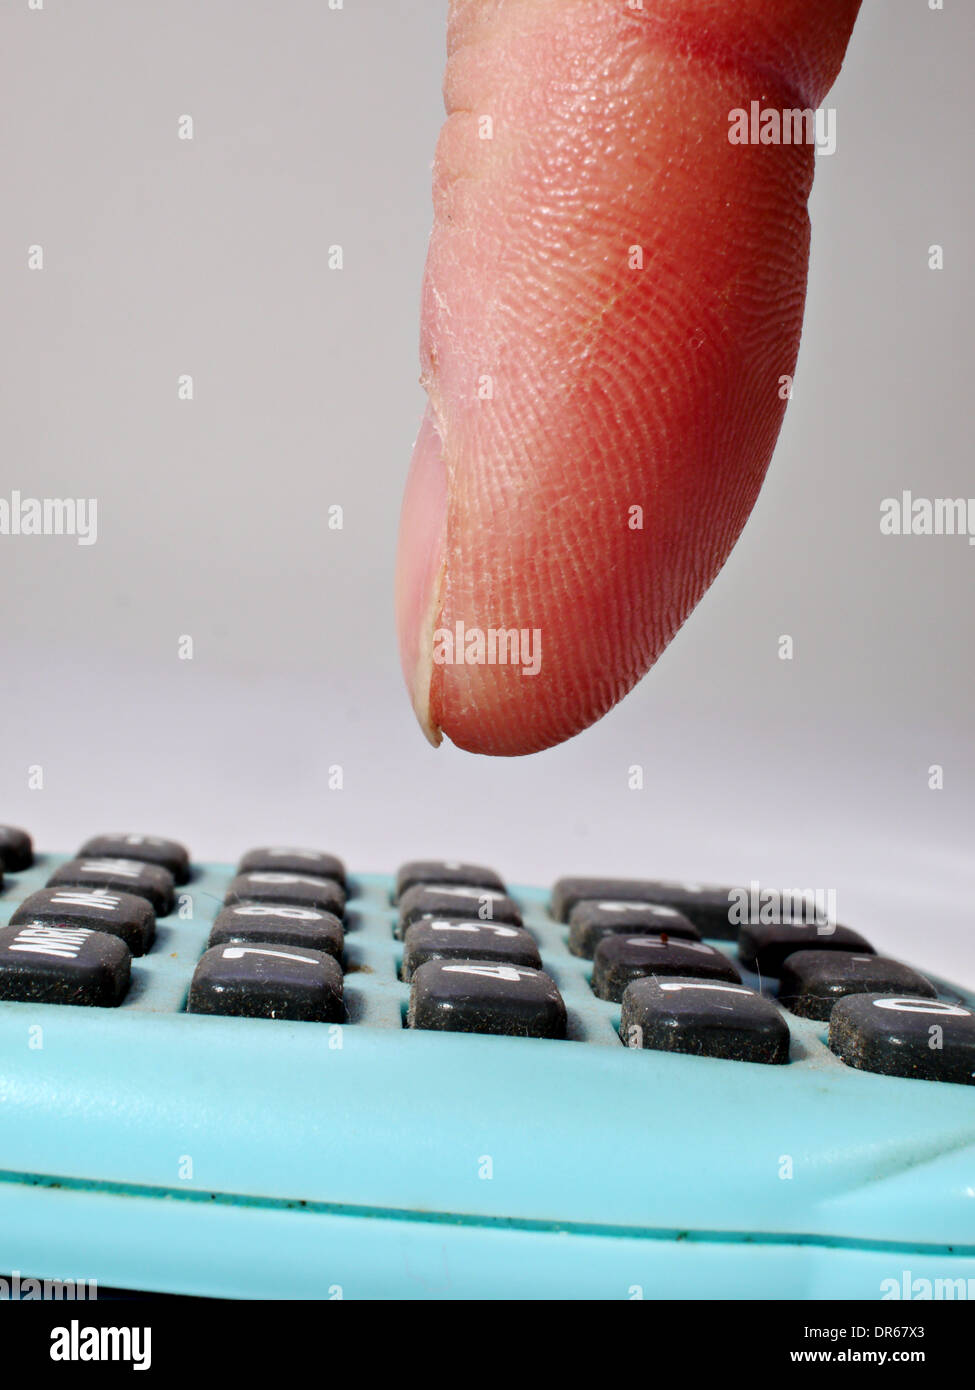 Un doigt est sur le point d'appuyer sur un bouton sur une petite calculatrice Banque D'Images